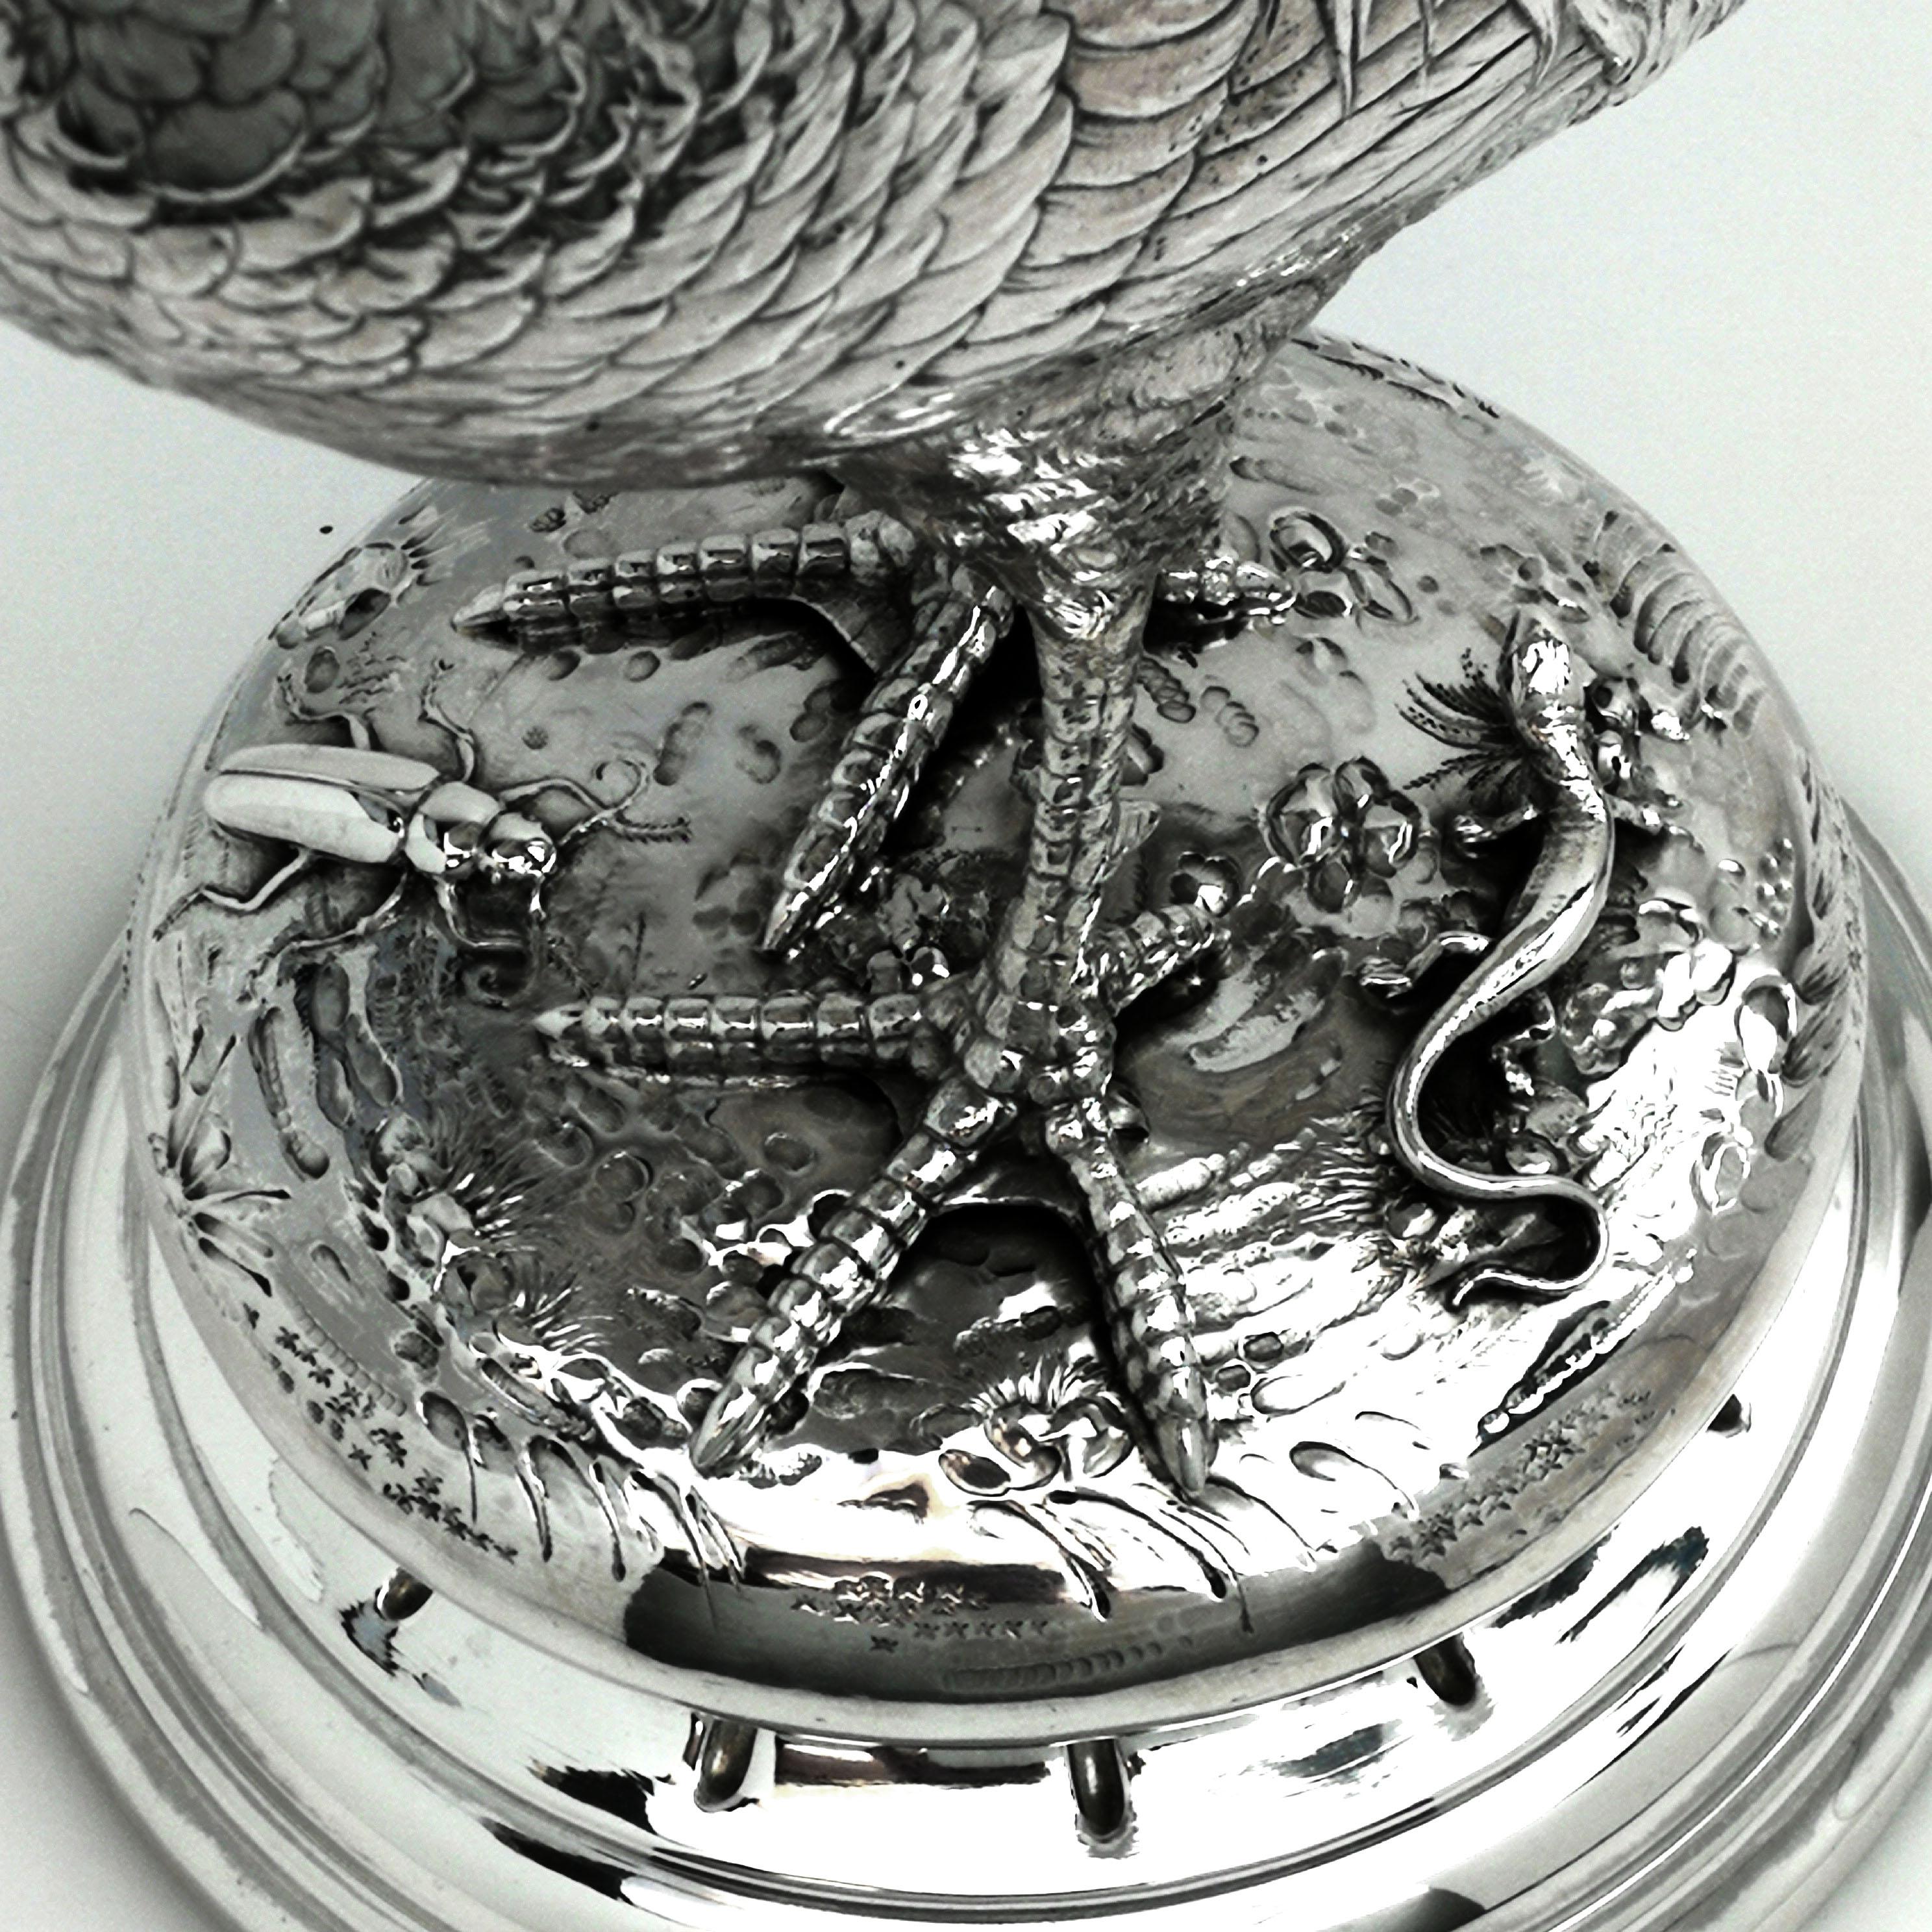 Antique German Silver Cockerel / Rooster Model Figure on Base 1899 ‘Import Mark’ For Sale 2